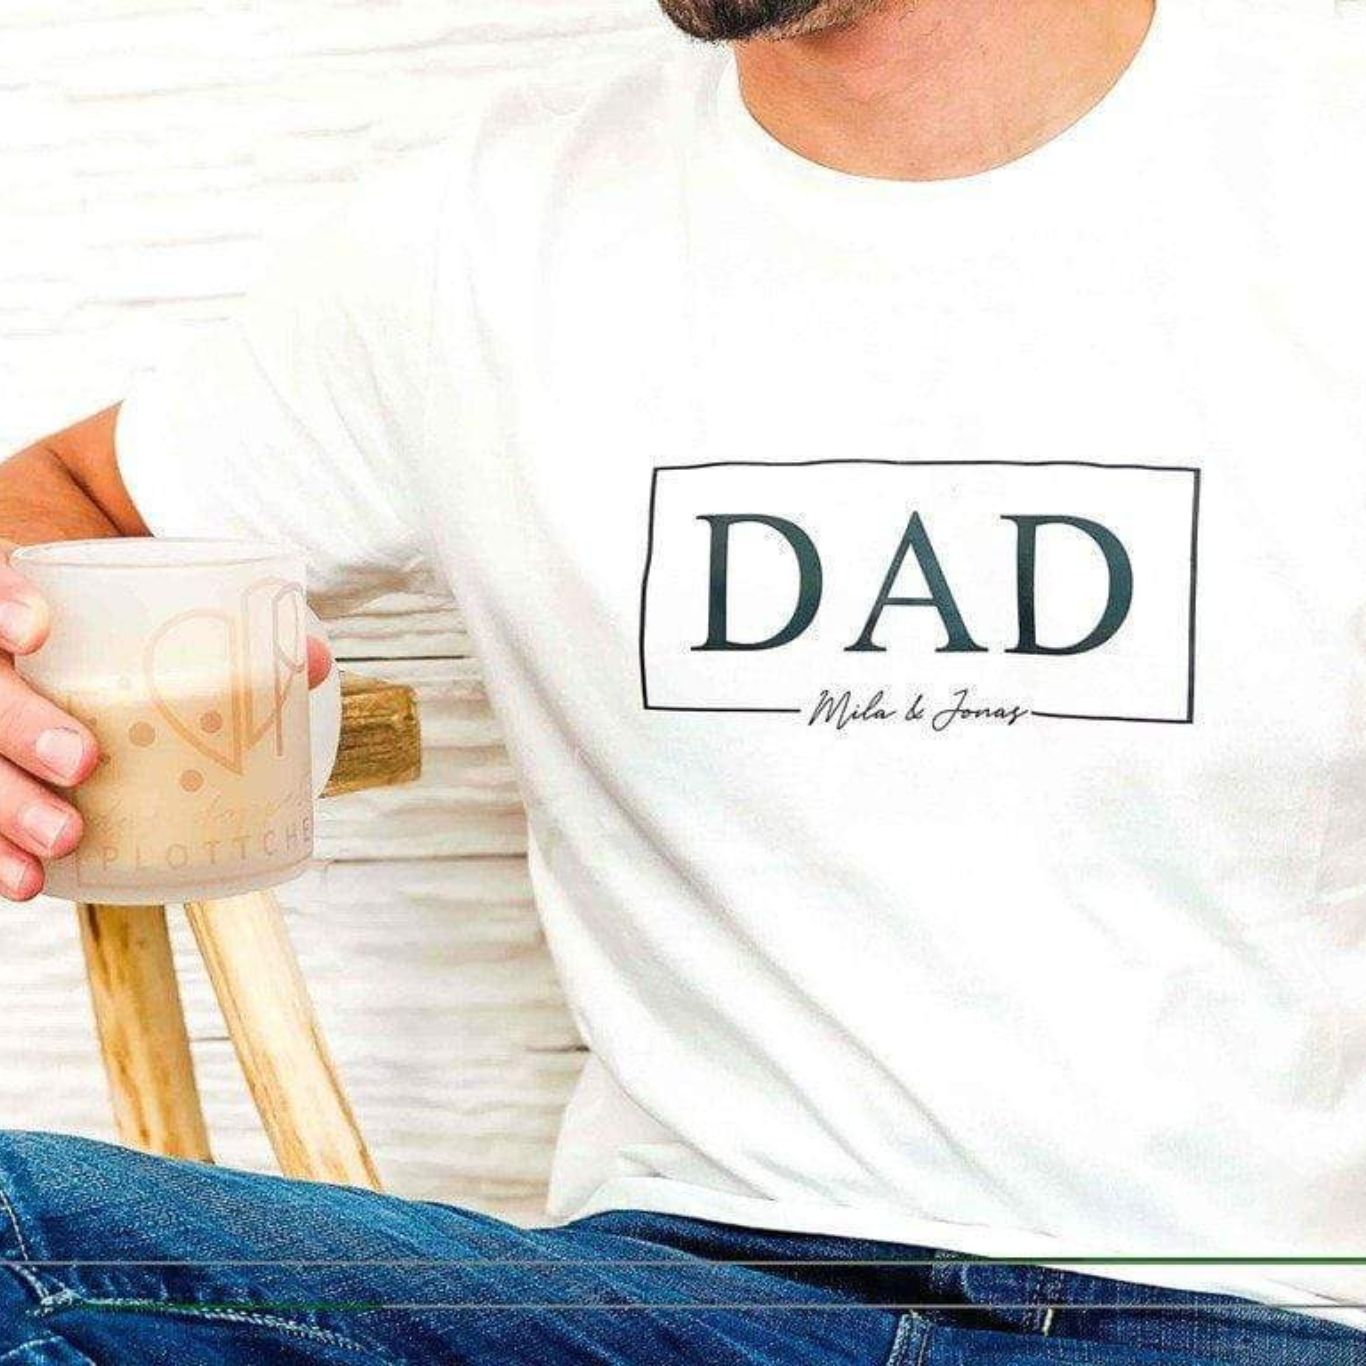 T-Shirt DADOF personalisiert das doppelte Plottchen®